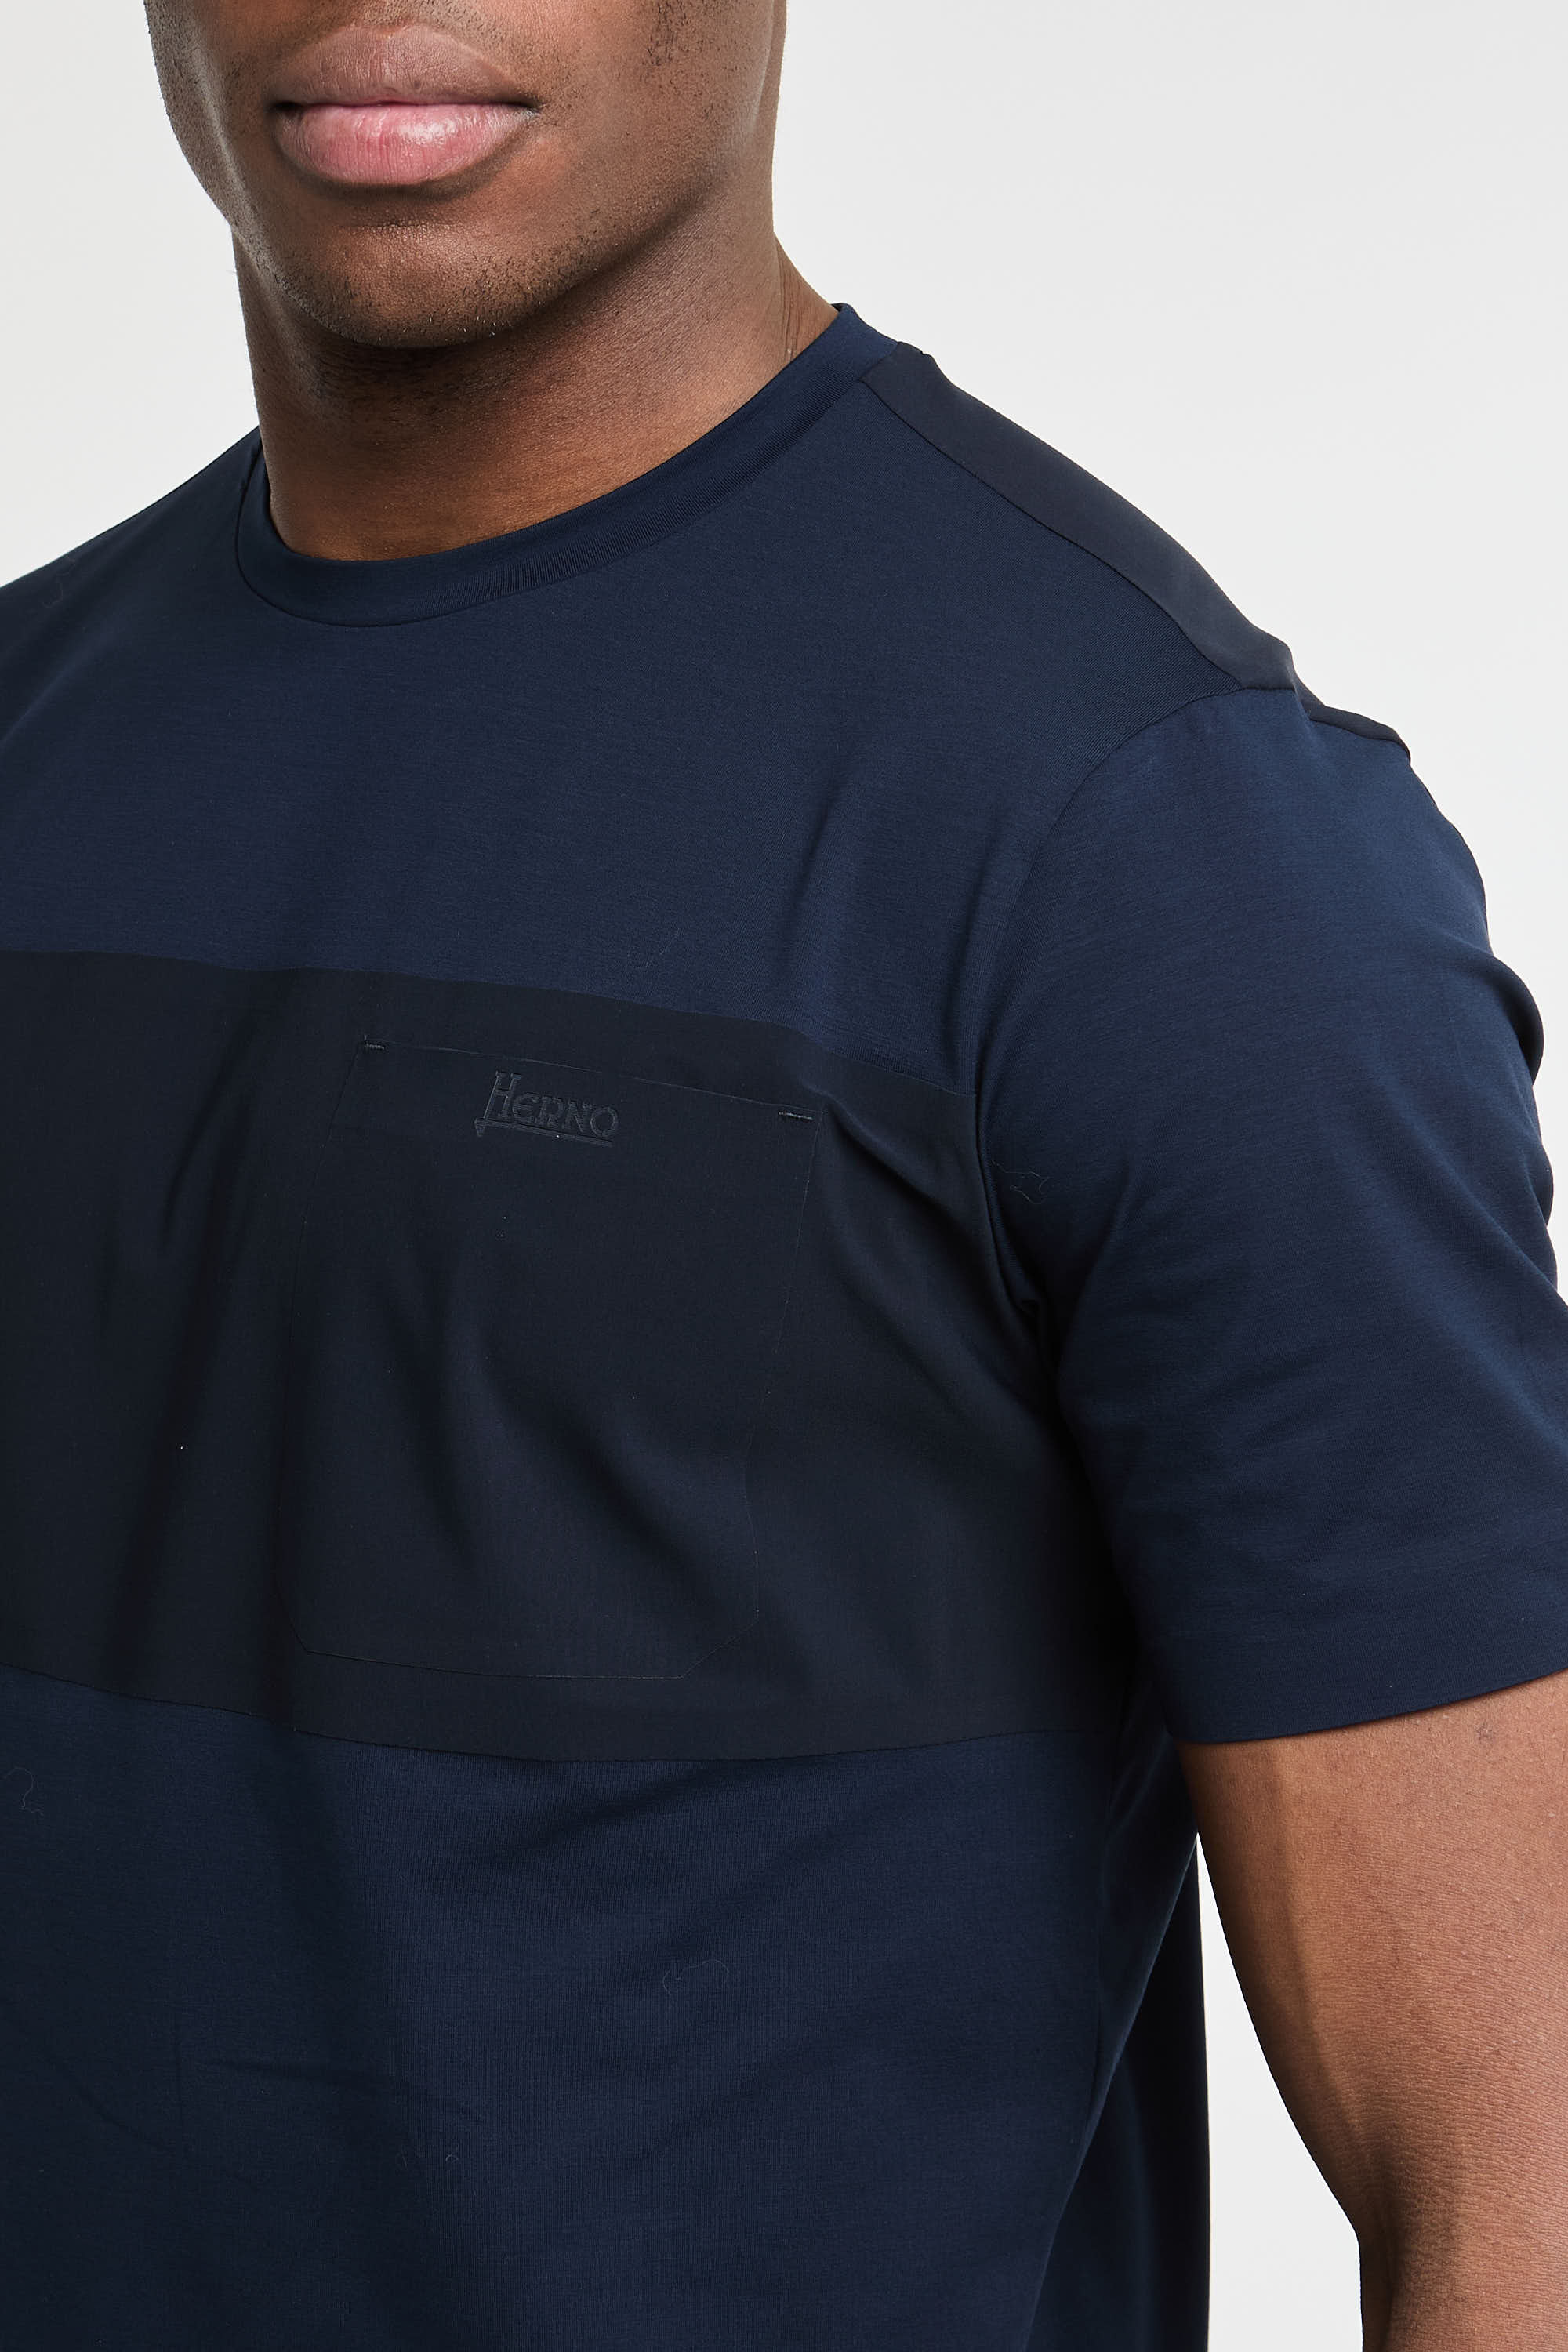 Herno T-Shirt aus Superfeiner Baumwolle/Strech & Leichtem Scuba Blau-1